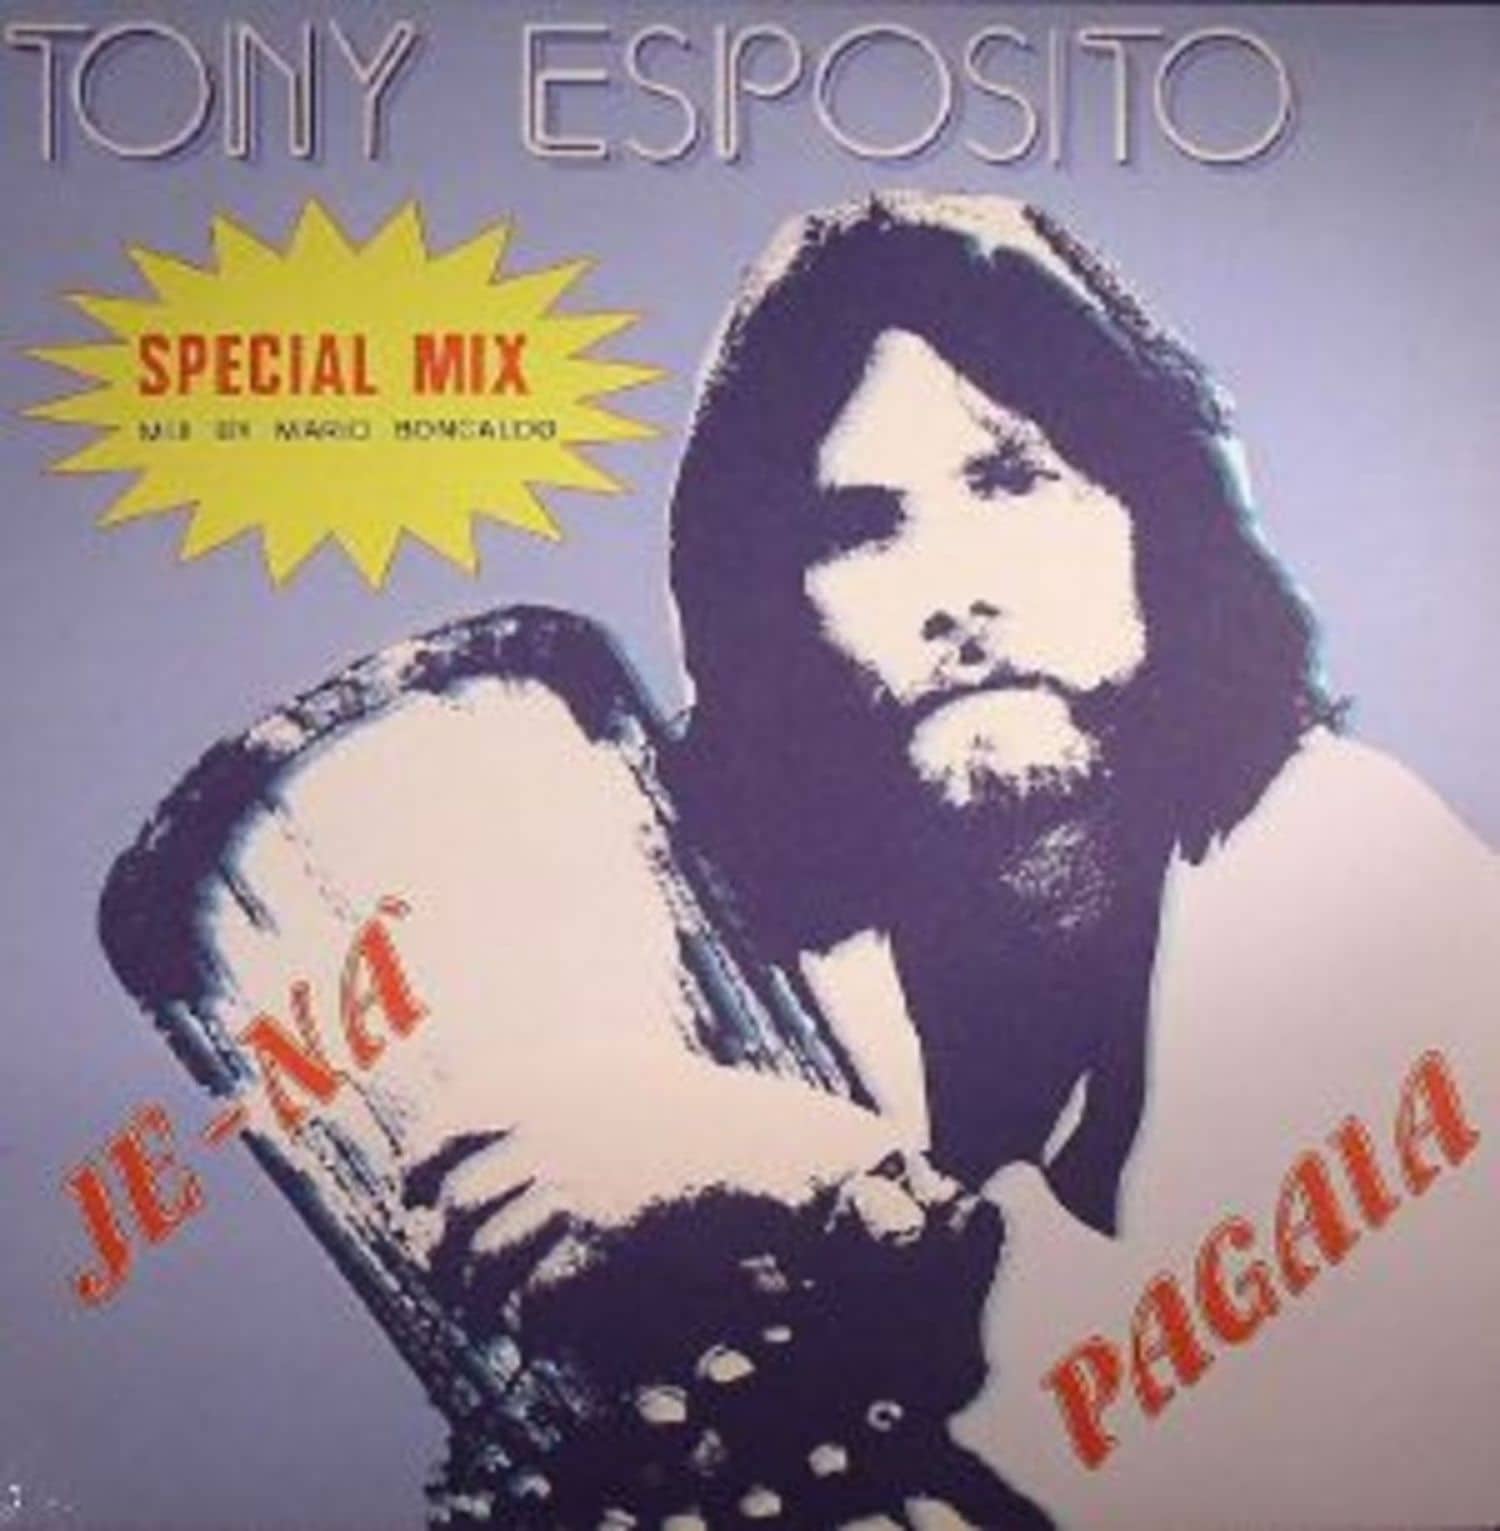 Tony Esposito - JE NA 